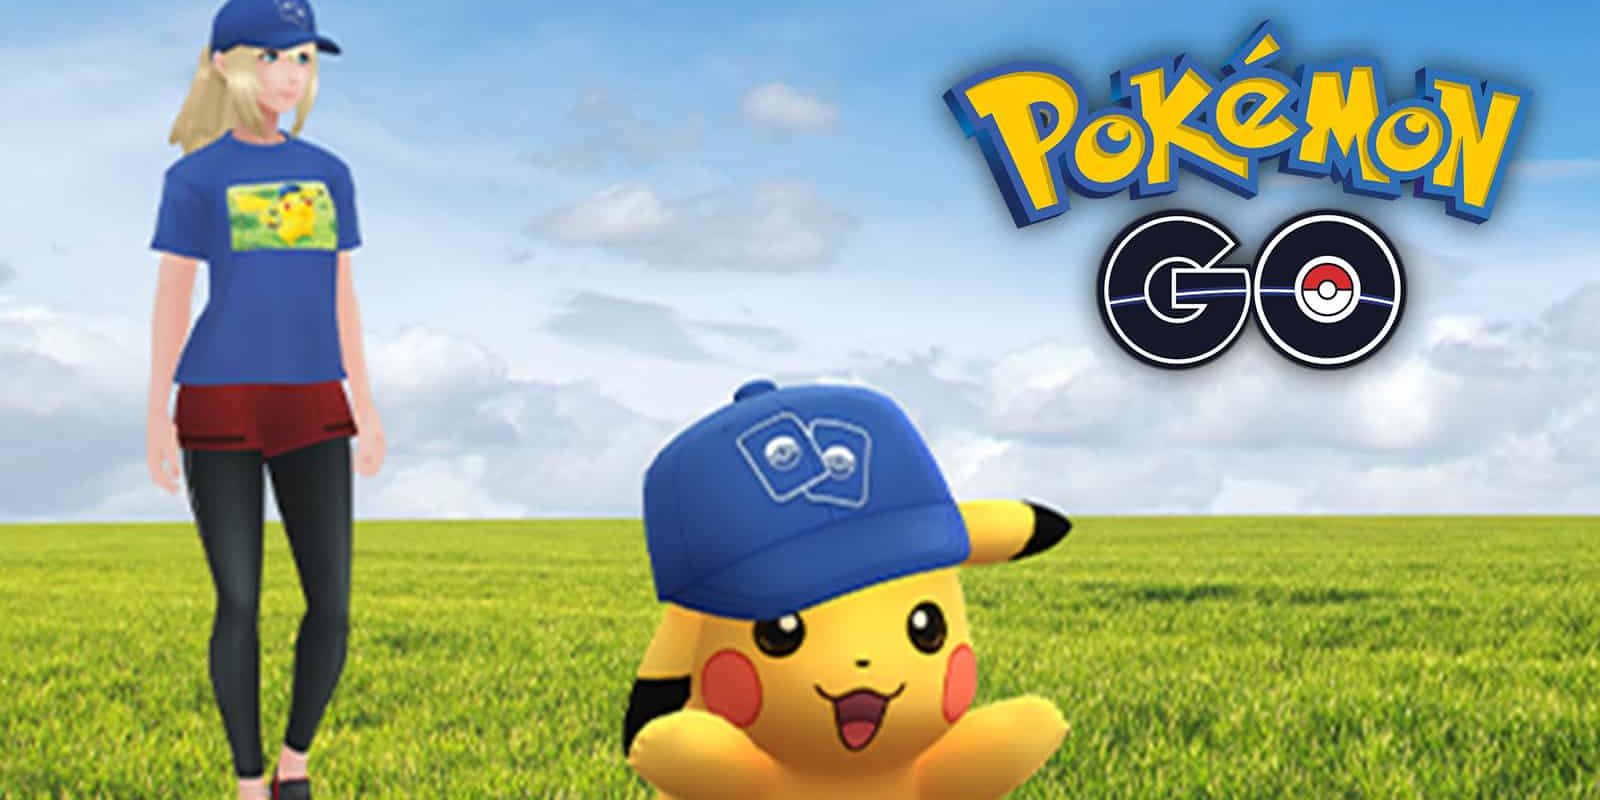 Pokémon GO TCG Crossover Event: Rewards and Shiny Pikachu